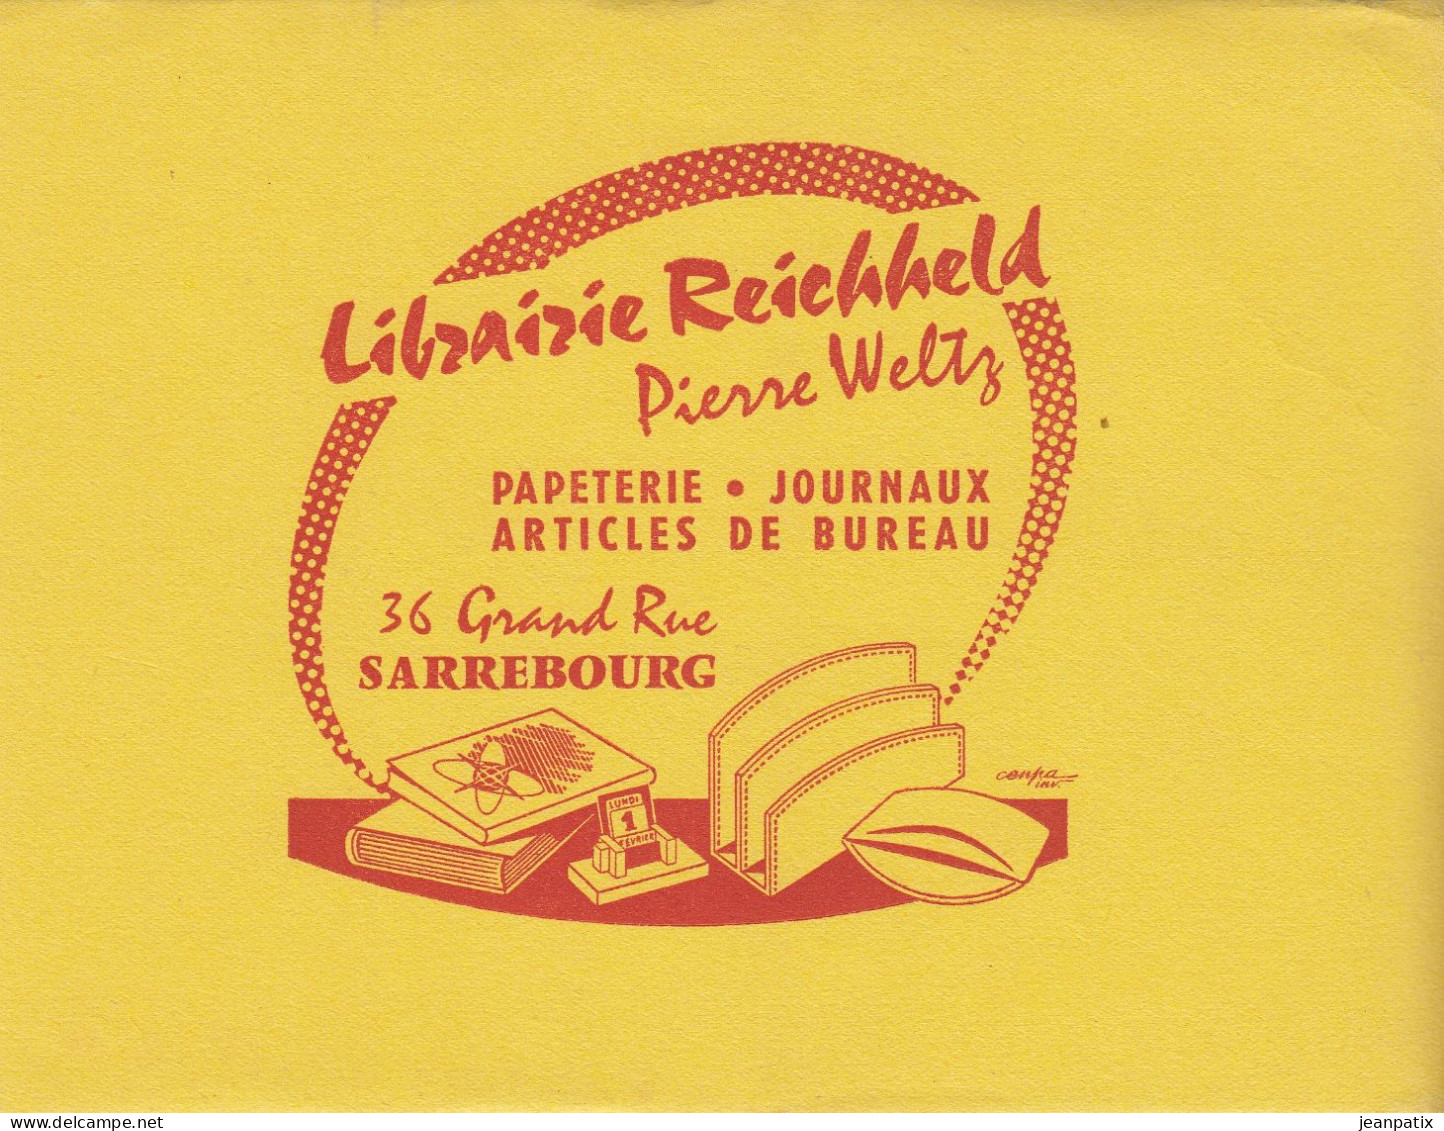 BUVARD & BLOTTER - Librairie REICHHELD - Pierre Weltz - SARREBOURG (Moselle) - Cacao